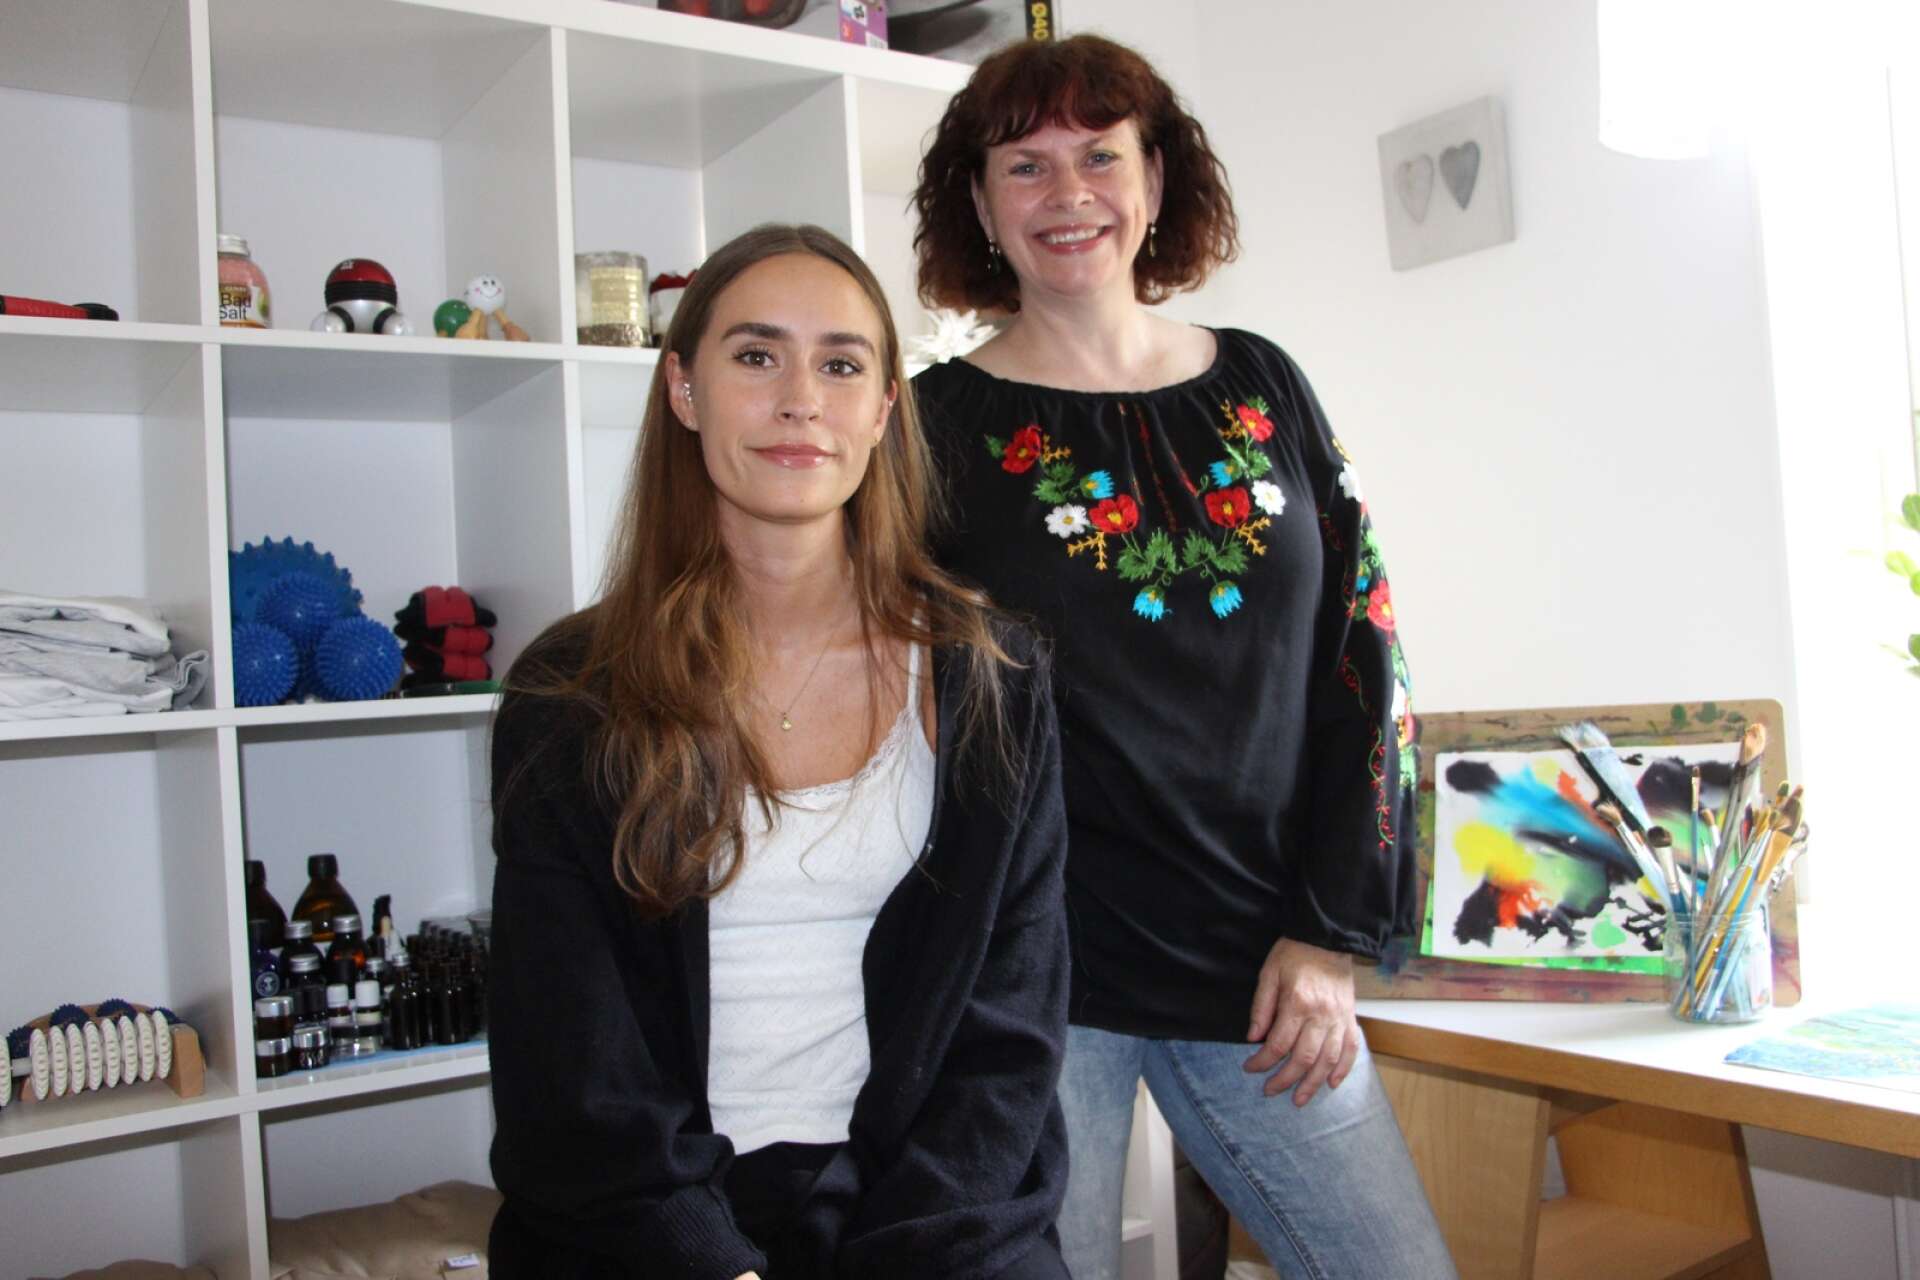 Maya Lindvall och Lotten Svensson har tagit initiativet att hjälpa ukrainska flyktingar.